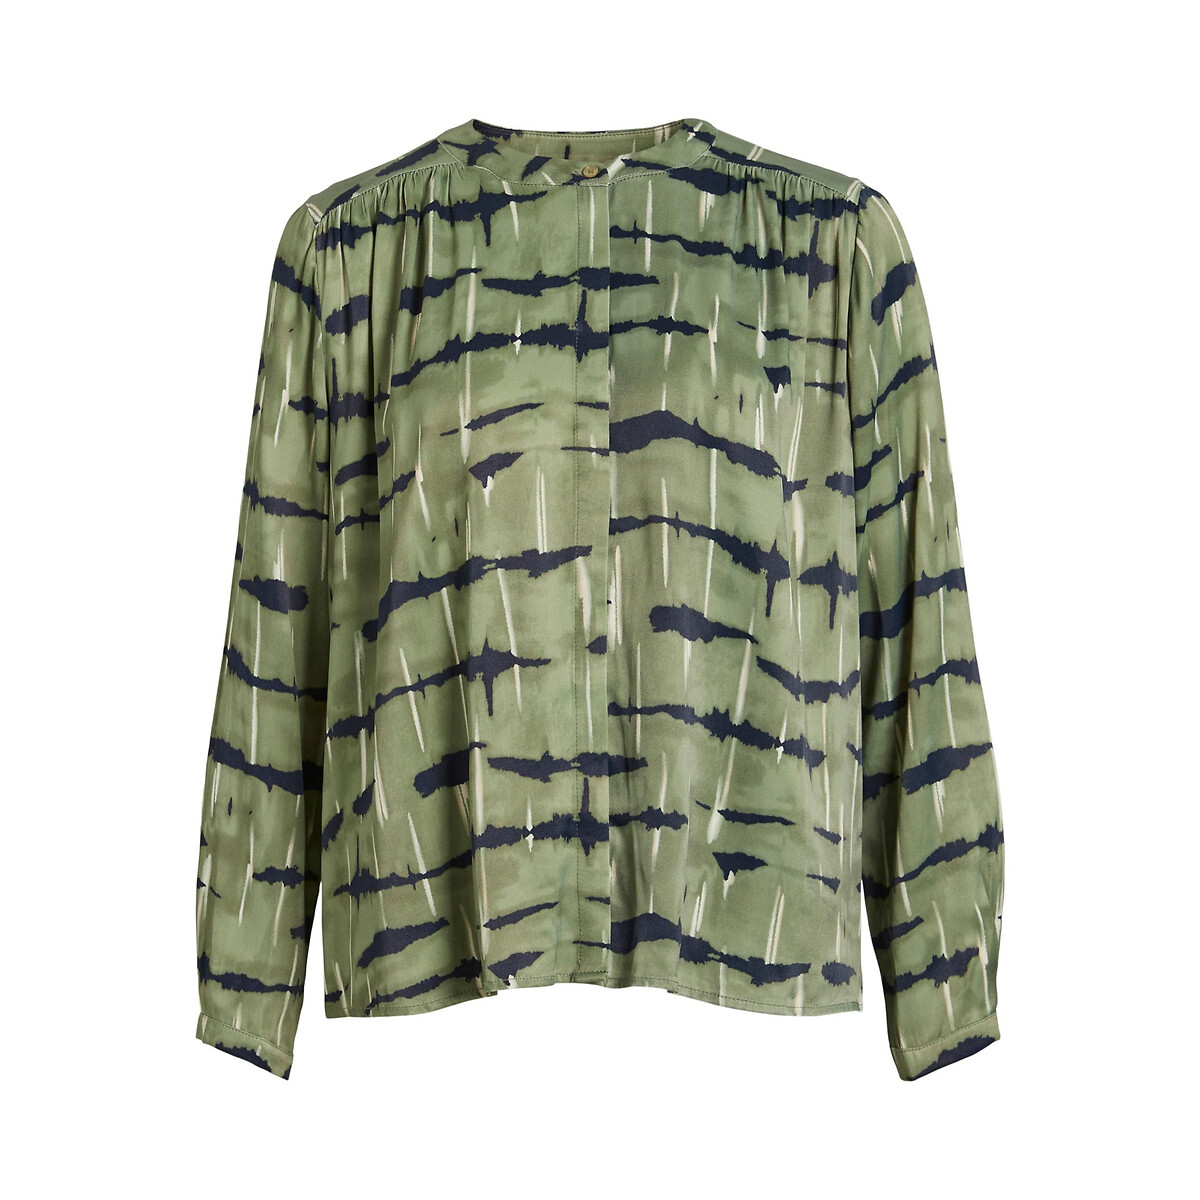 Блузка атласная принт зебра 42 (FR) - 48 (RUS) зеленый блузка с викторианским воротником принт сердечки 42 fr 48 rus черный